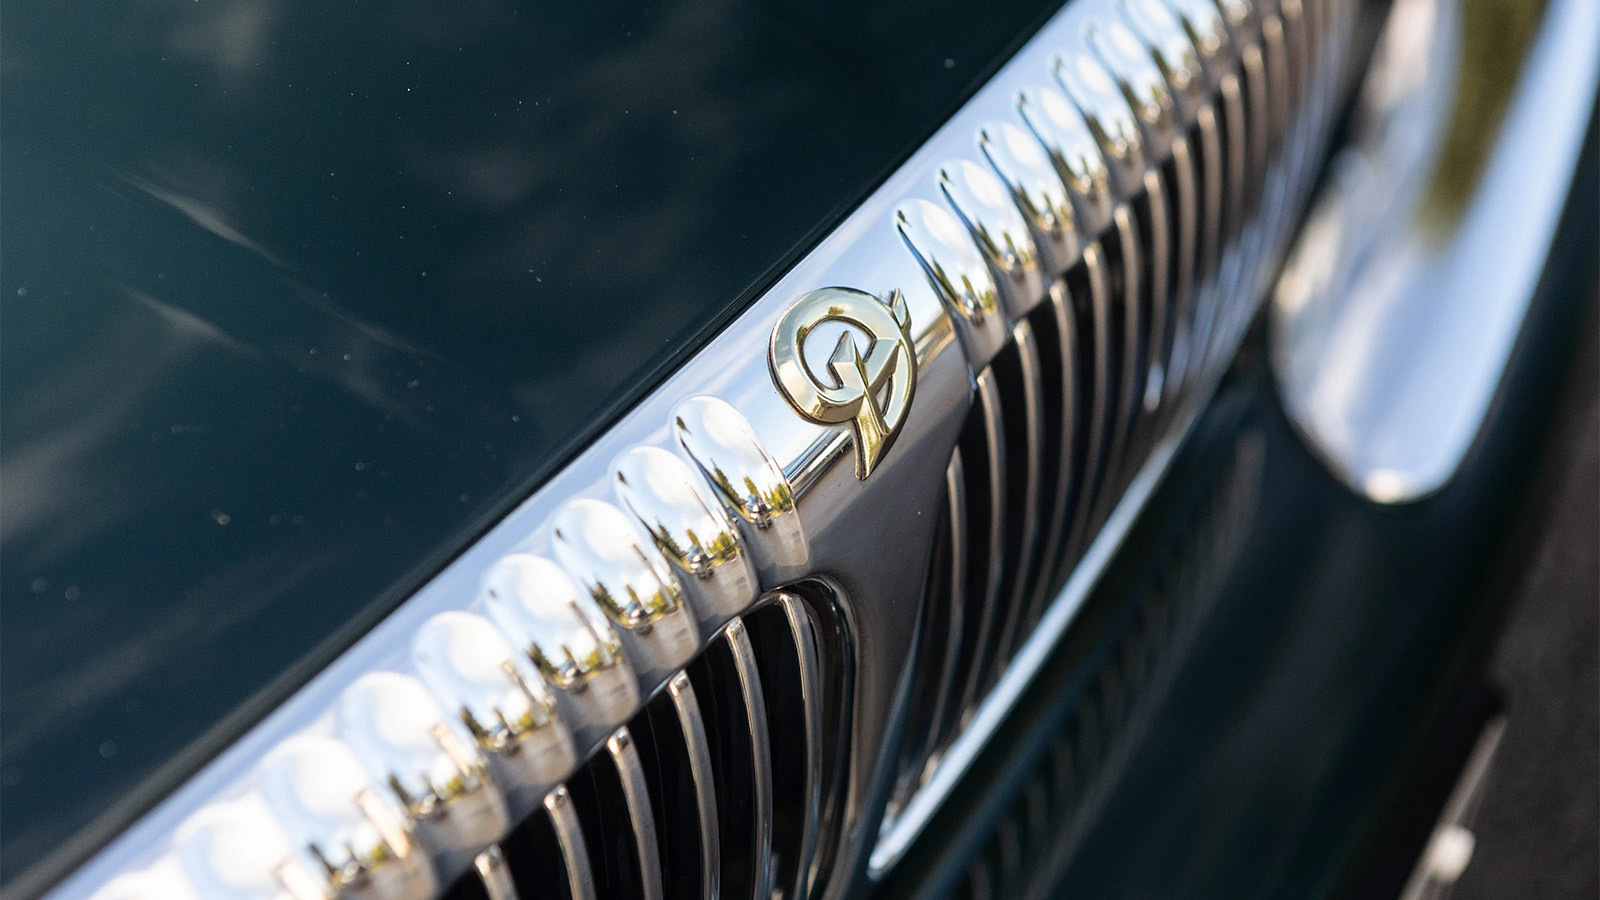 Queen Elizabeth II’s Daimler V8 for sale